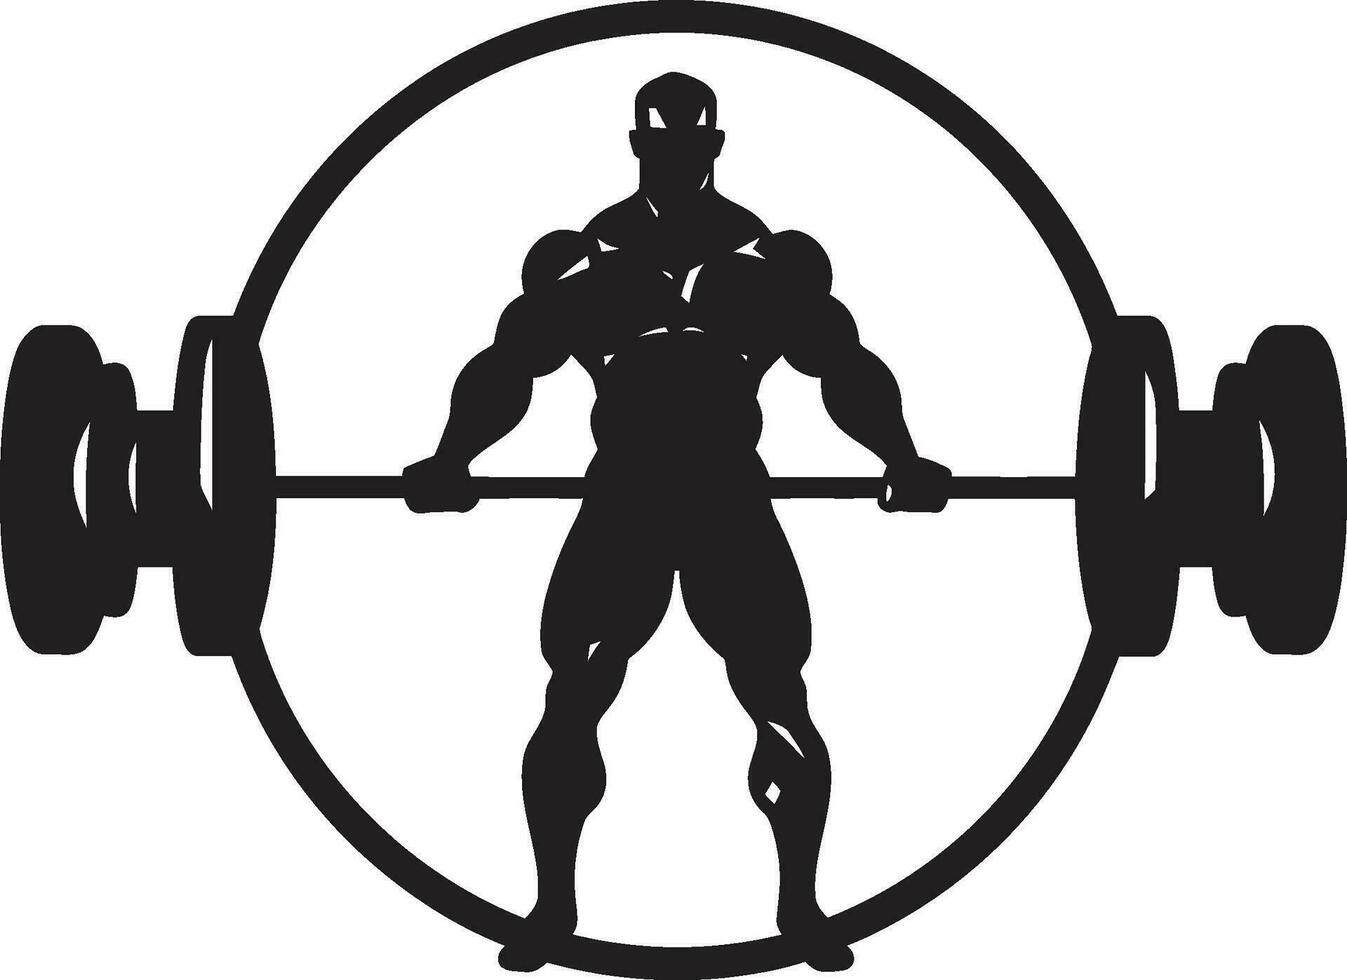 actief anatomie oefening vector kunst voor bodybuilding ontwerpen geschiktheid fusie bodybuilding vector pictogrammen in oefening ontwerp